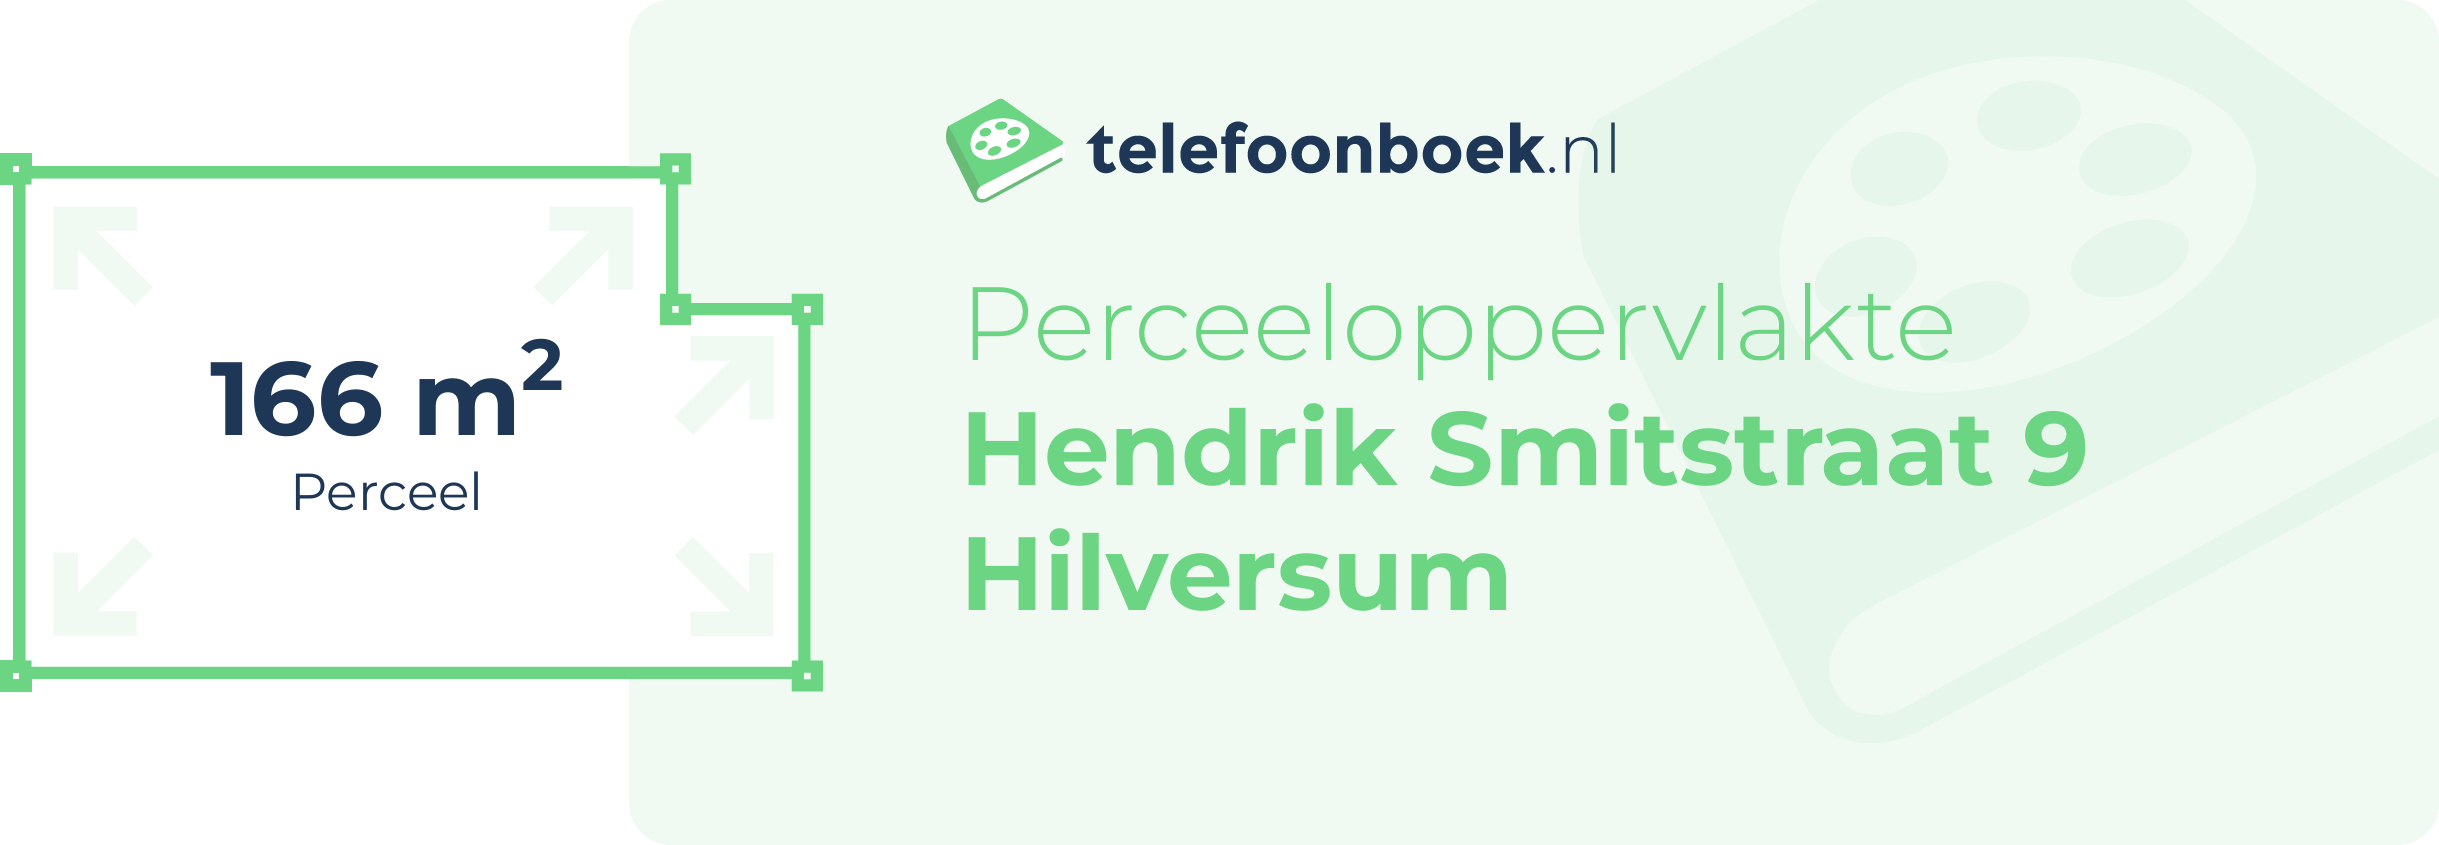 Perceeloppervlakte Hendrik Smitstraat 9 Hilversum